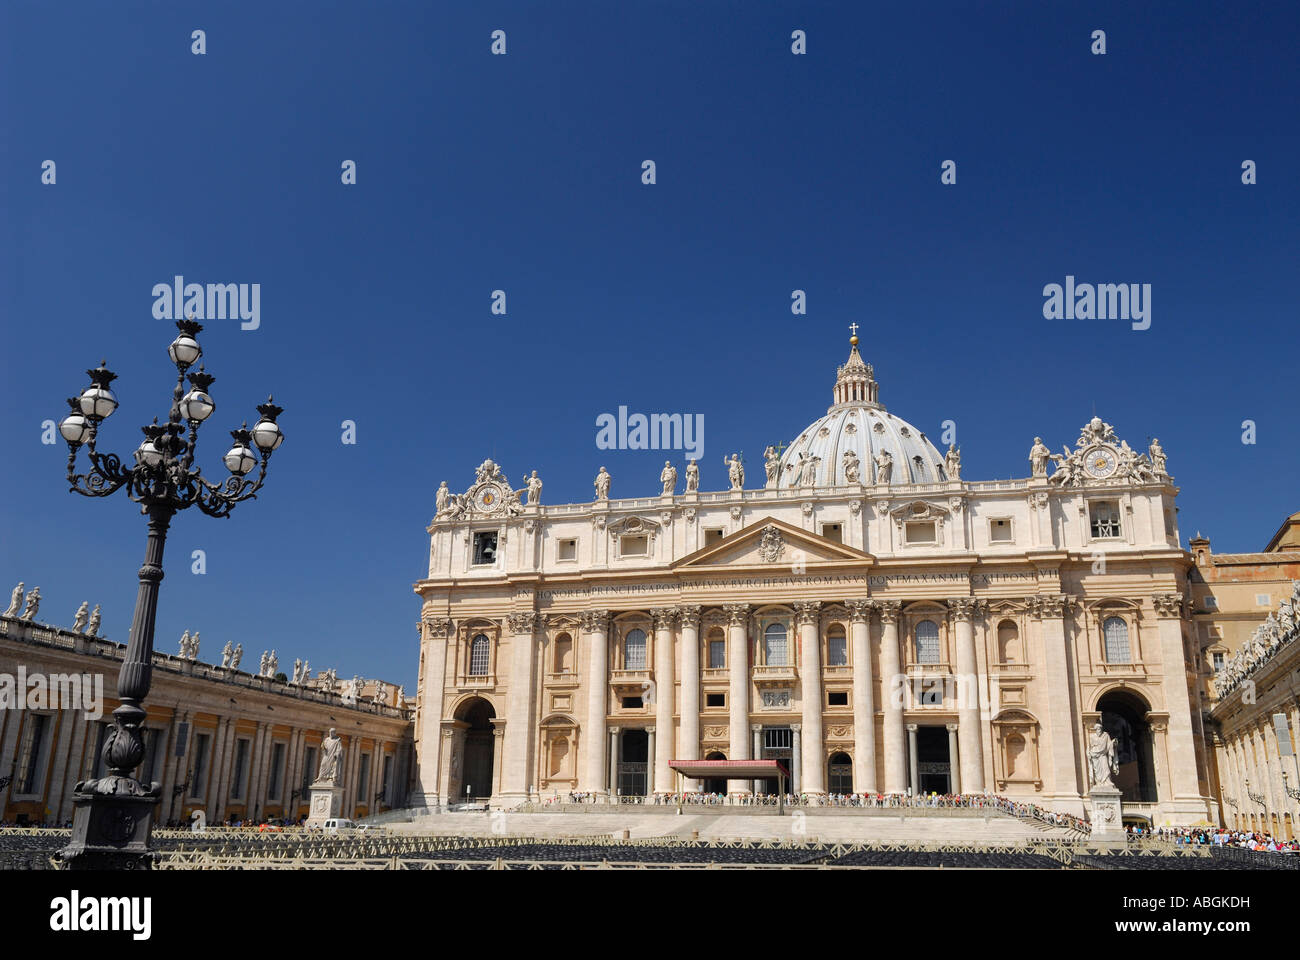 Vorderseite des Saint Peters päpstliche Basilika Vatikan in Rom Italien bei Sonnenschein mit Lampe und blauer Himmel Stockfoto